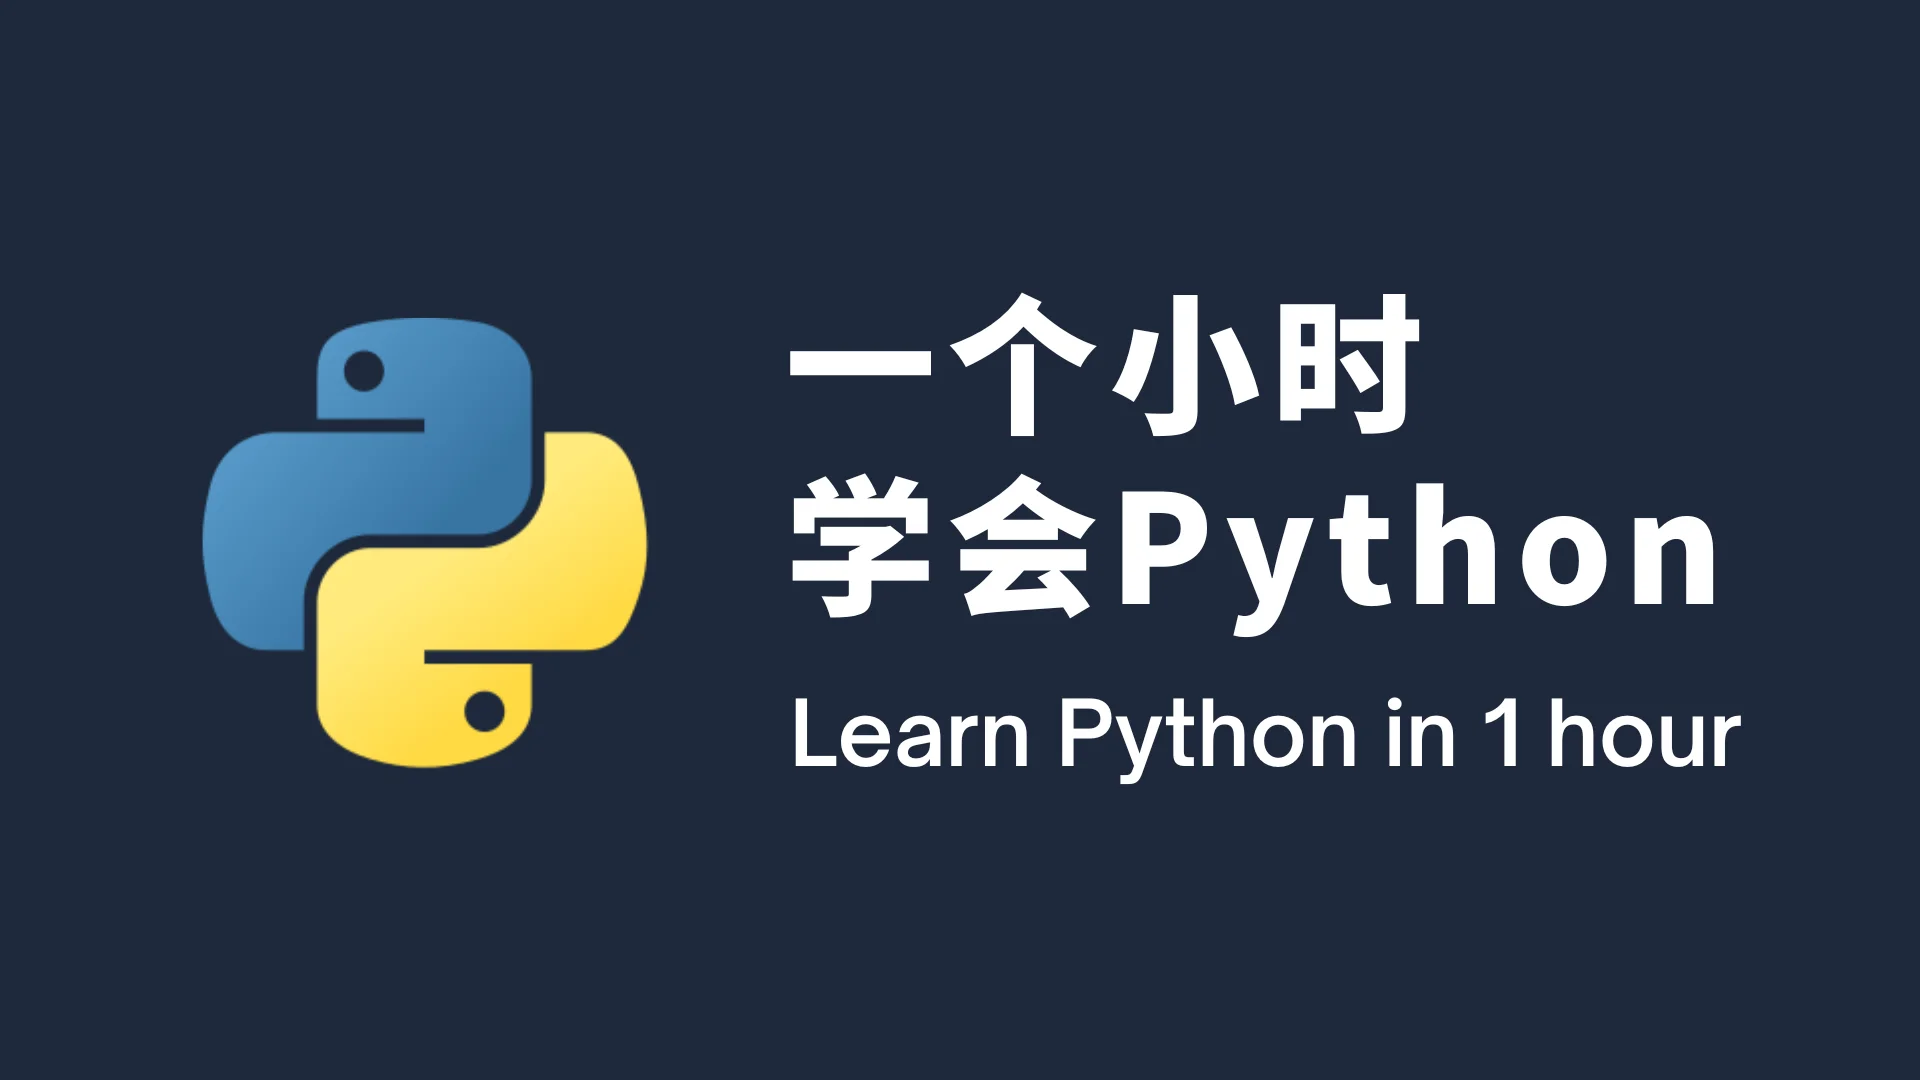 一个小时学会 Python